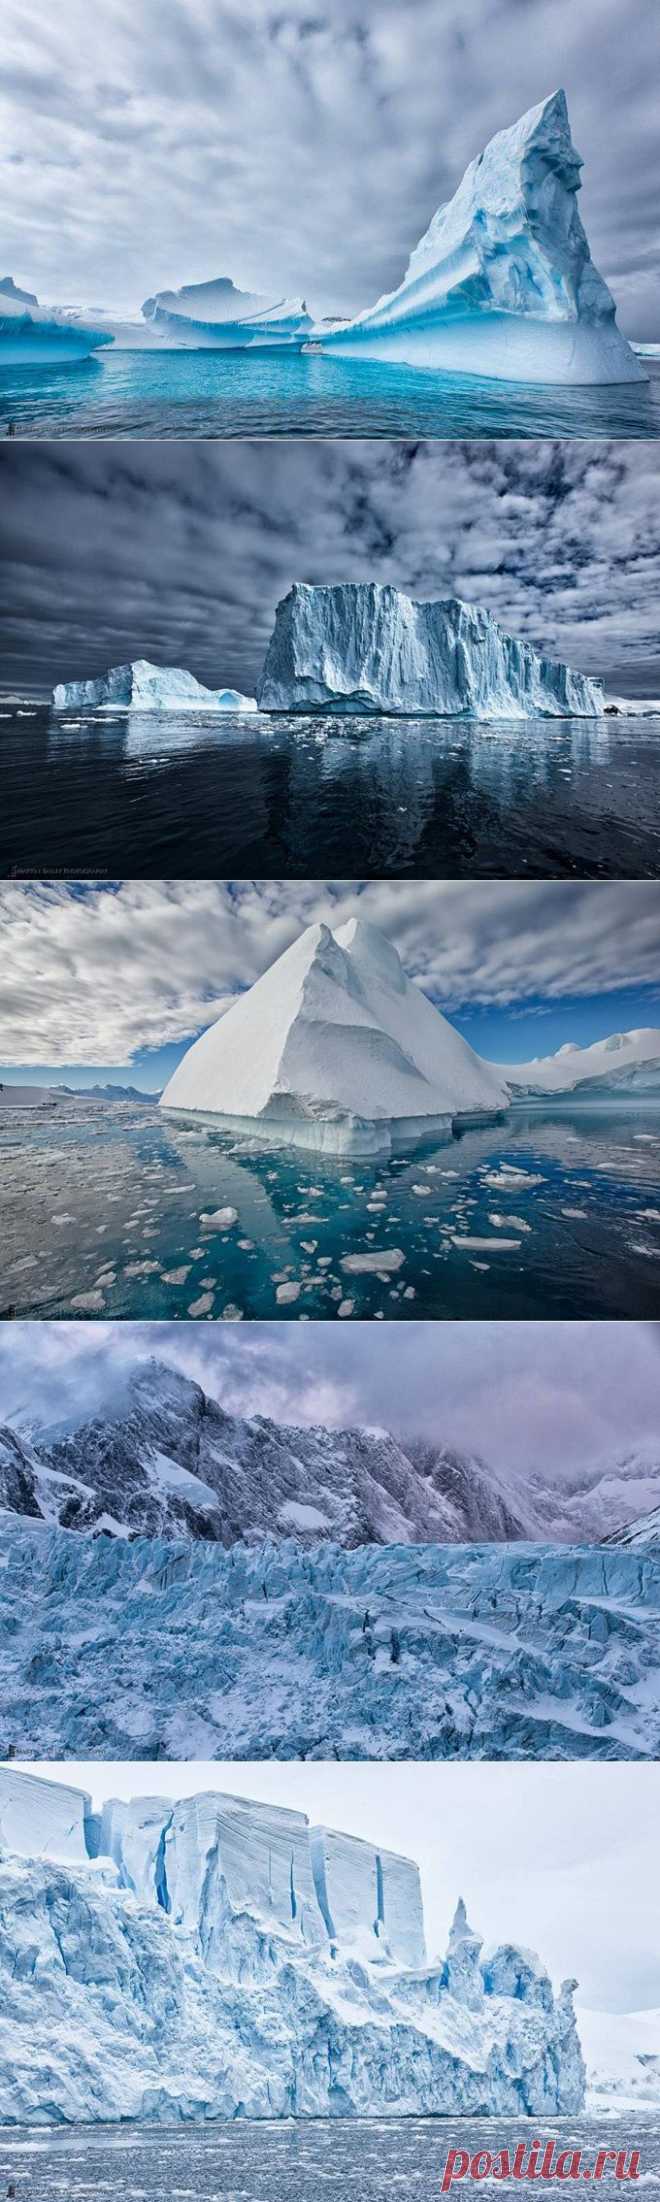 Трэвел-фотограф Мартин Бэйли посвятил серию фотографий ледникам Антарктиды.